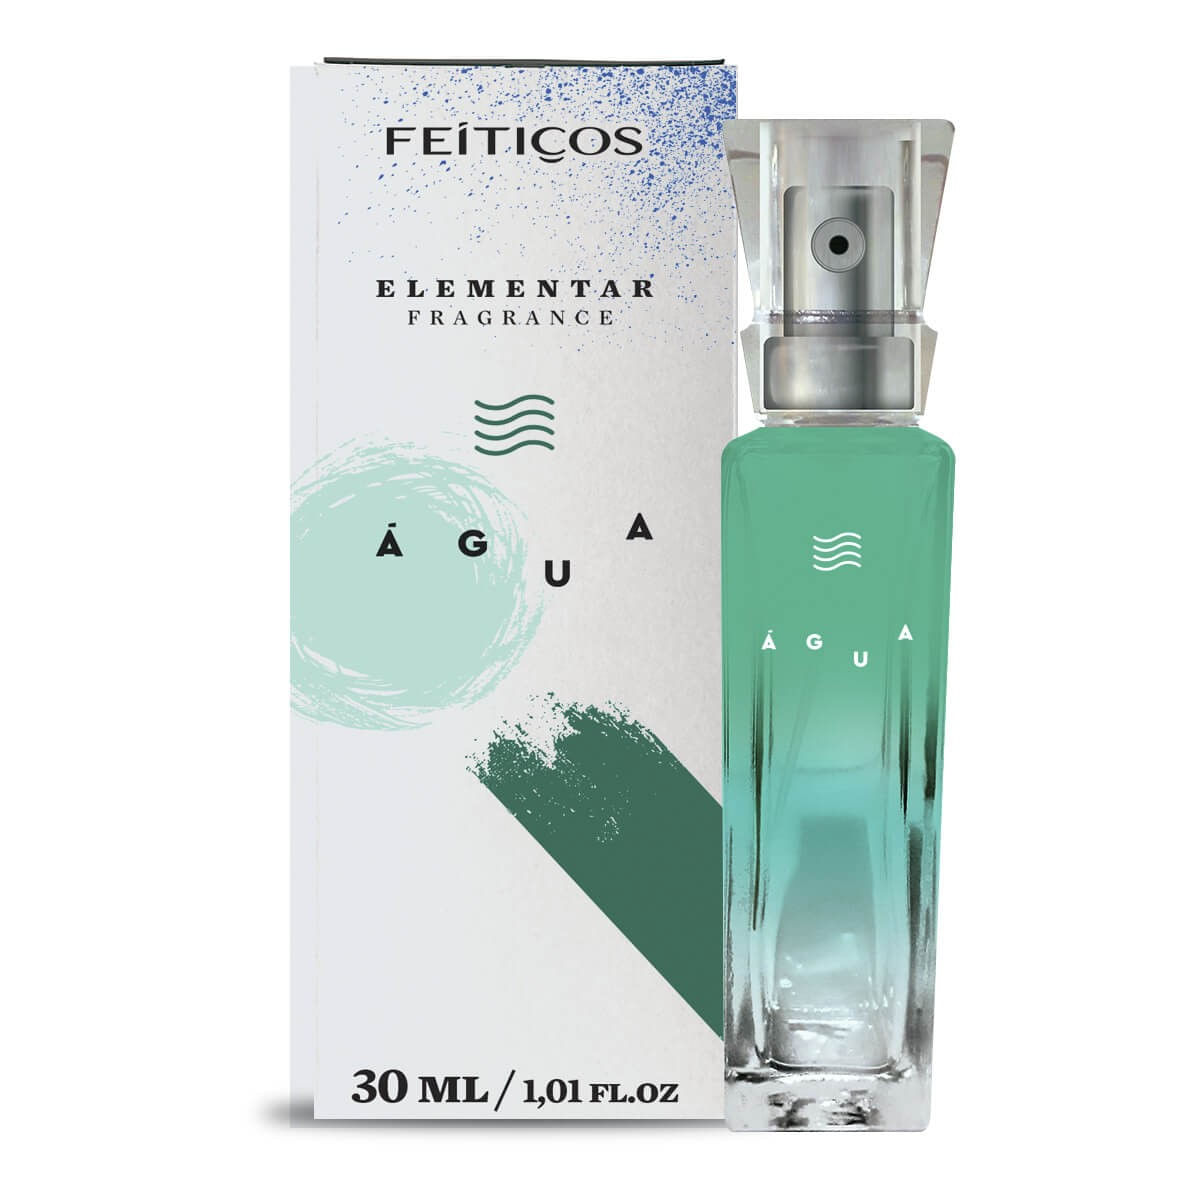 Elementar Fragrance Perfume dos Signos 30ml Feitiços